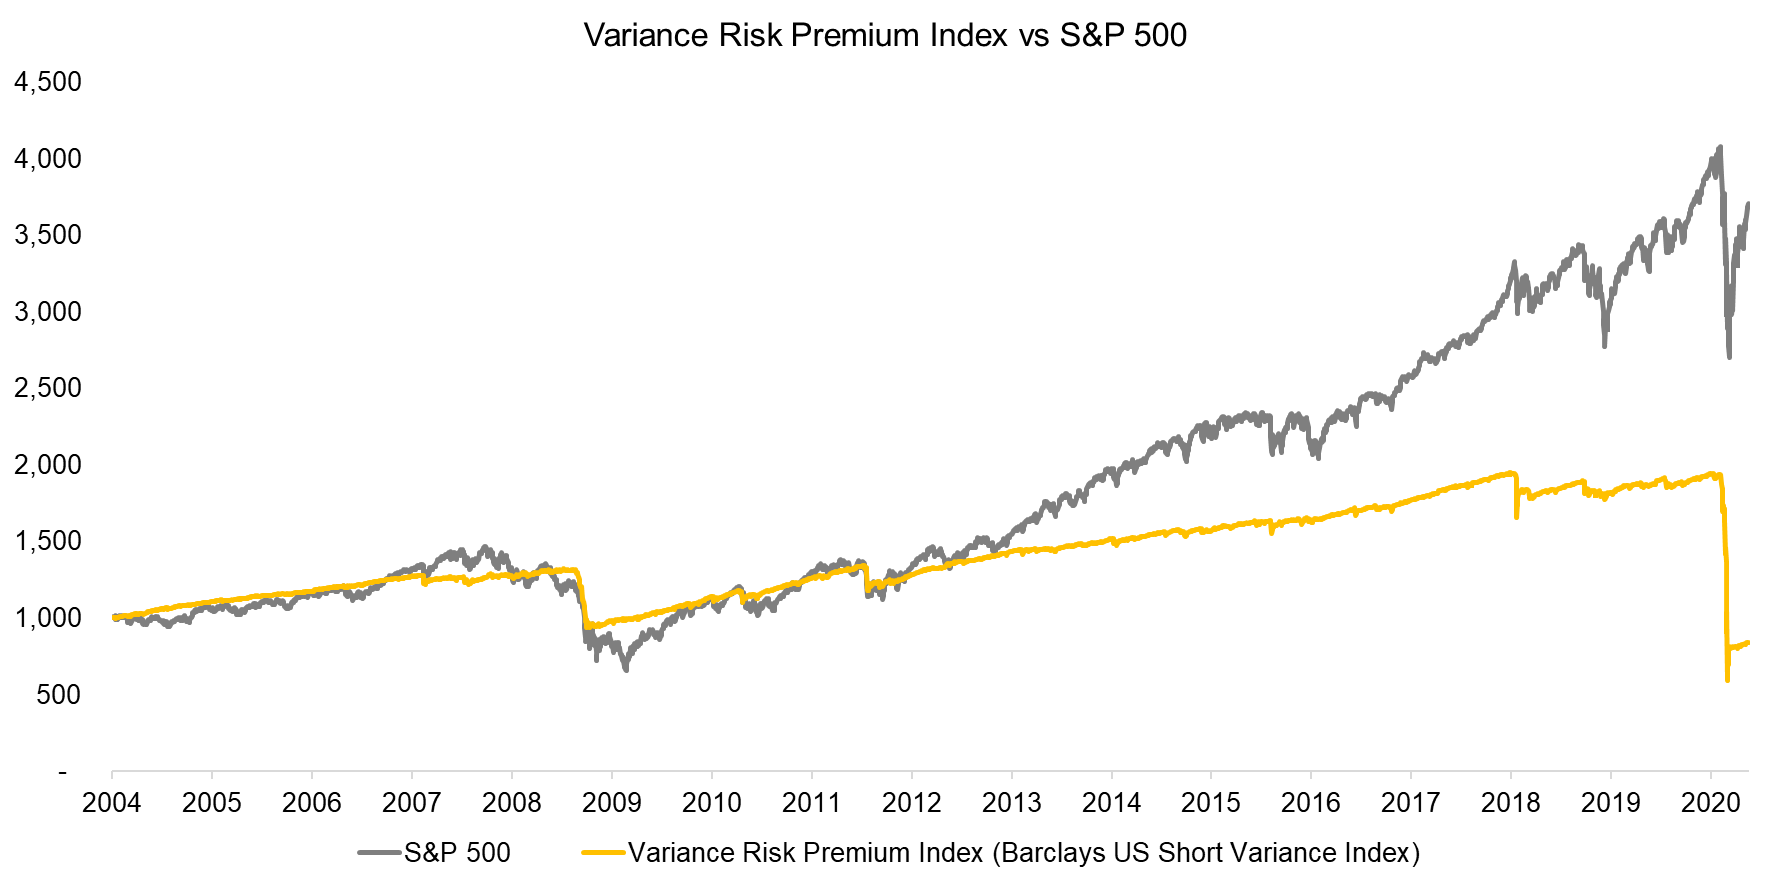 Variance Risk Premium Index vs S&P 500